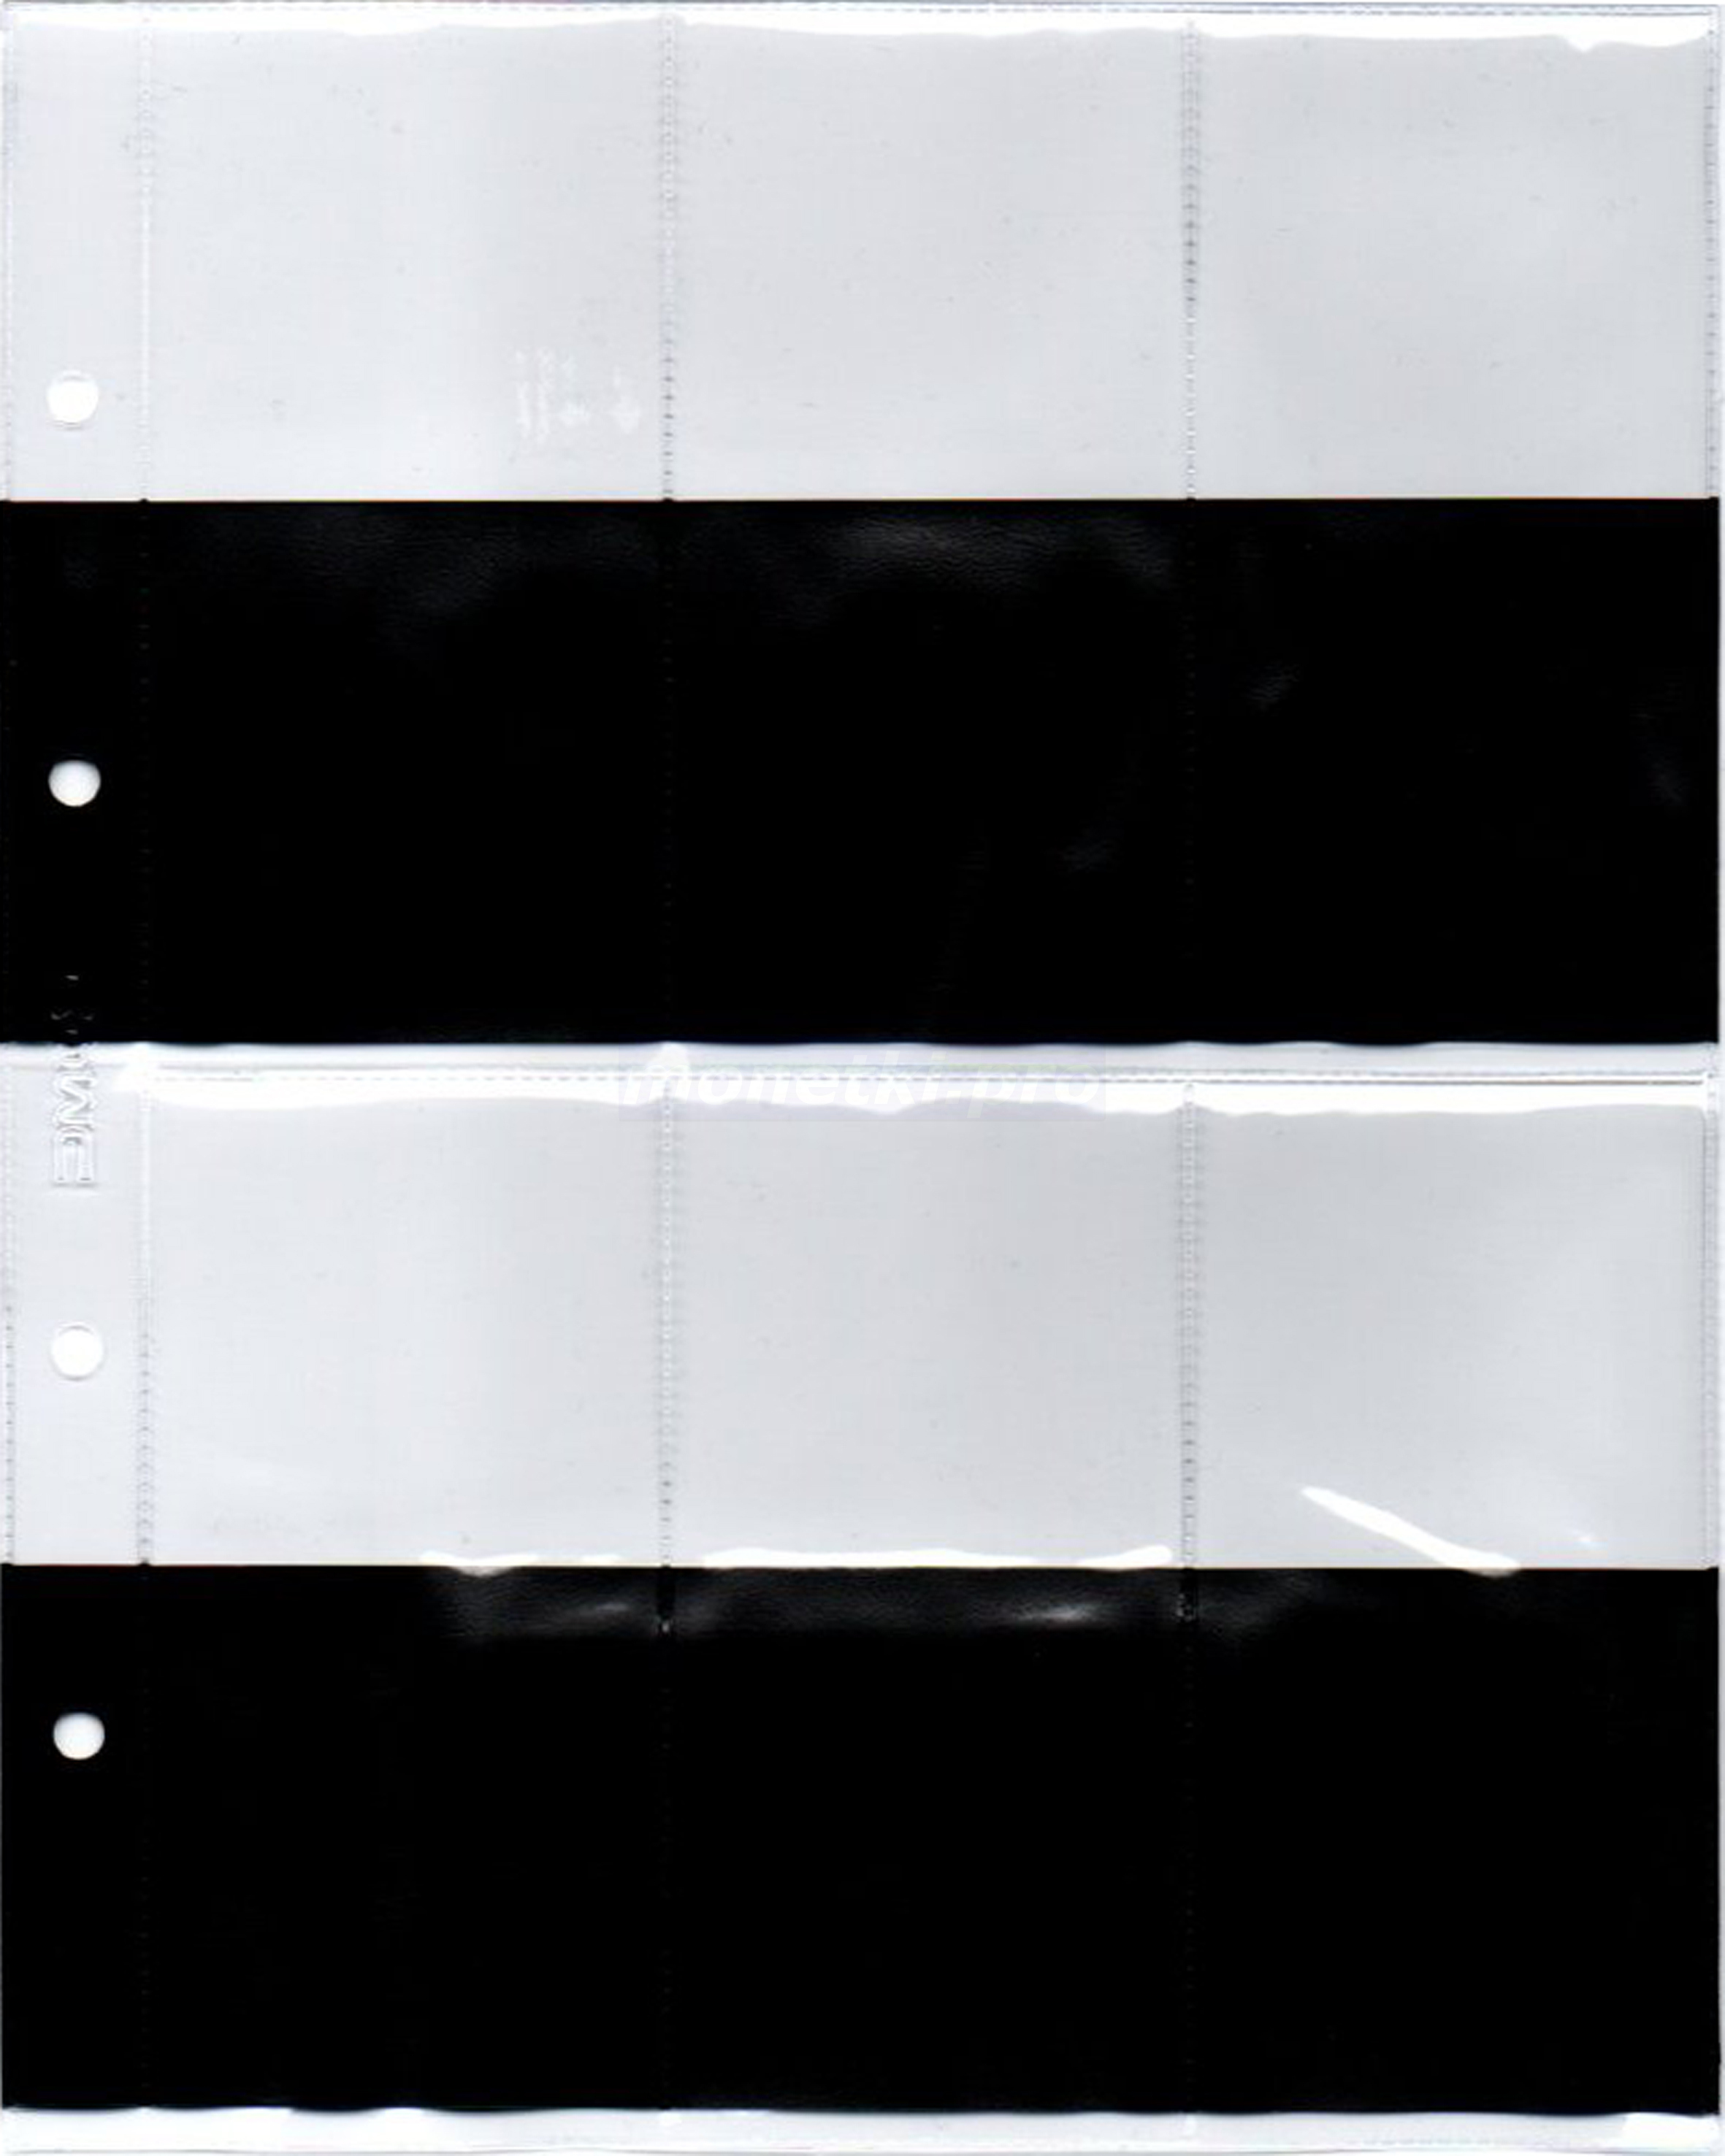 Купить листы для медалей с черными вставками на 6 ячеек 58 х 115 мм формат Оптима (Optima), фото 